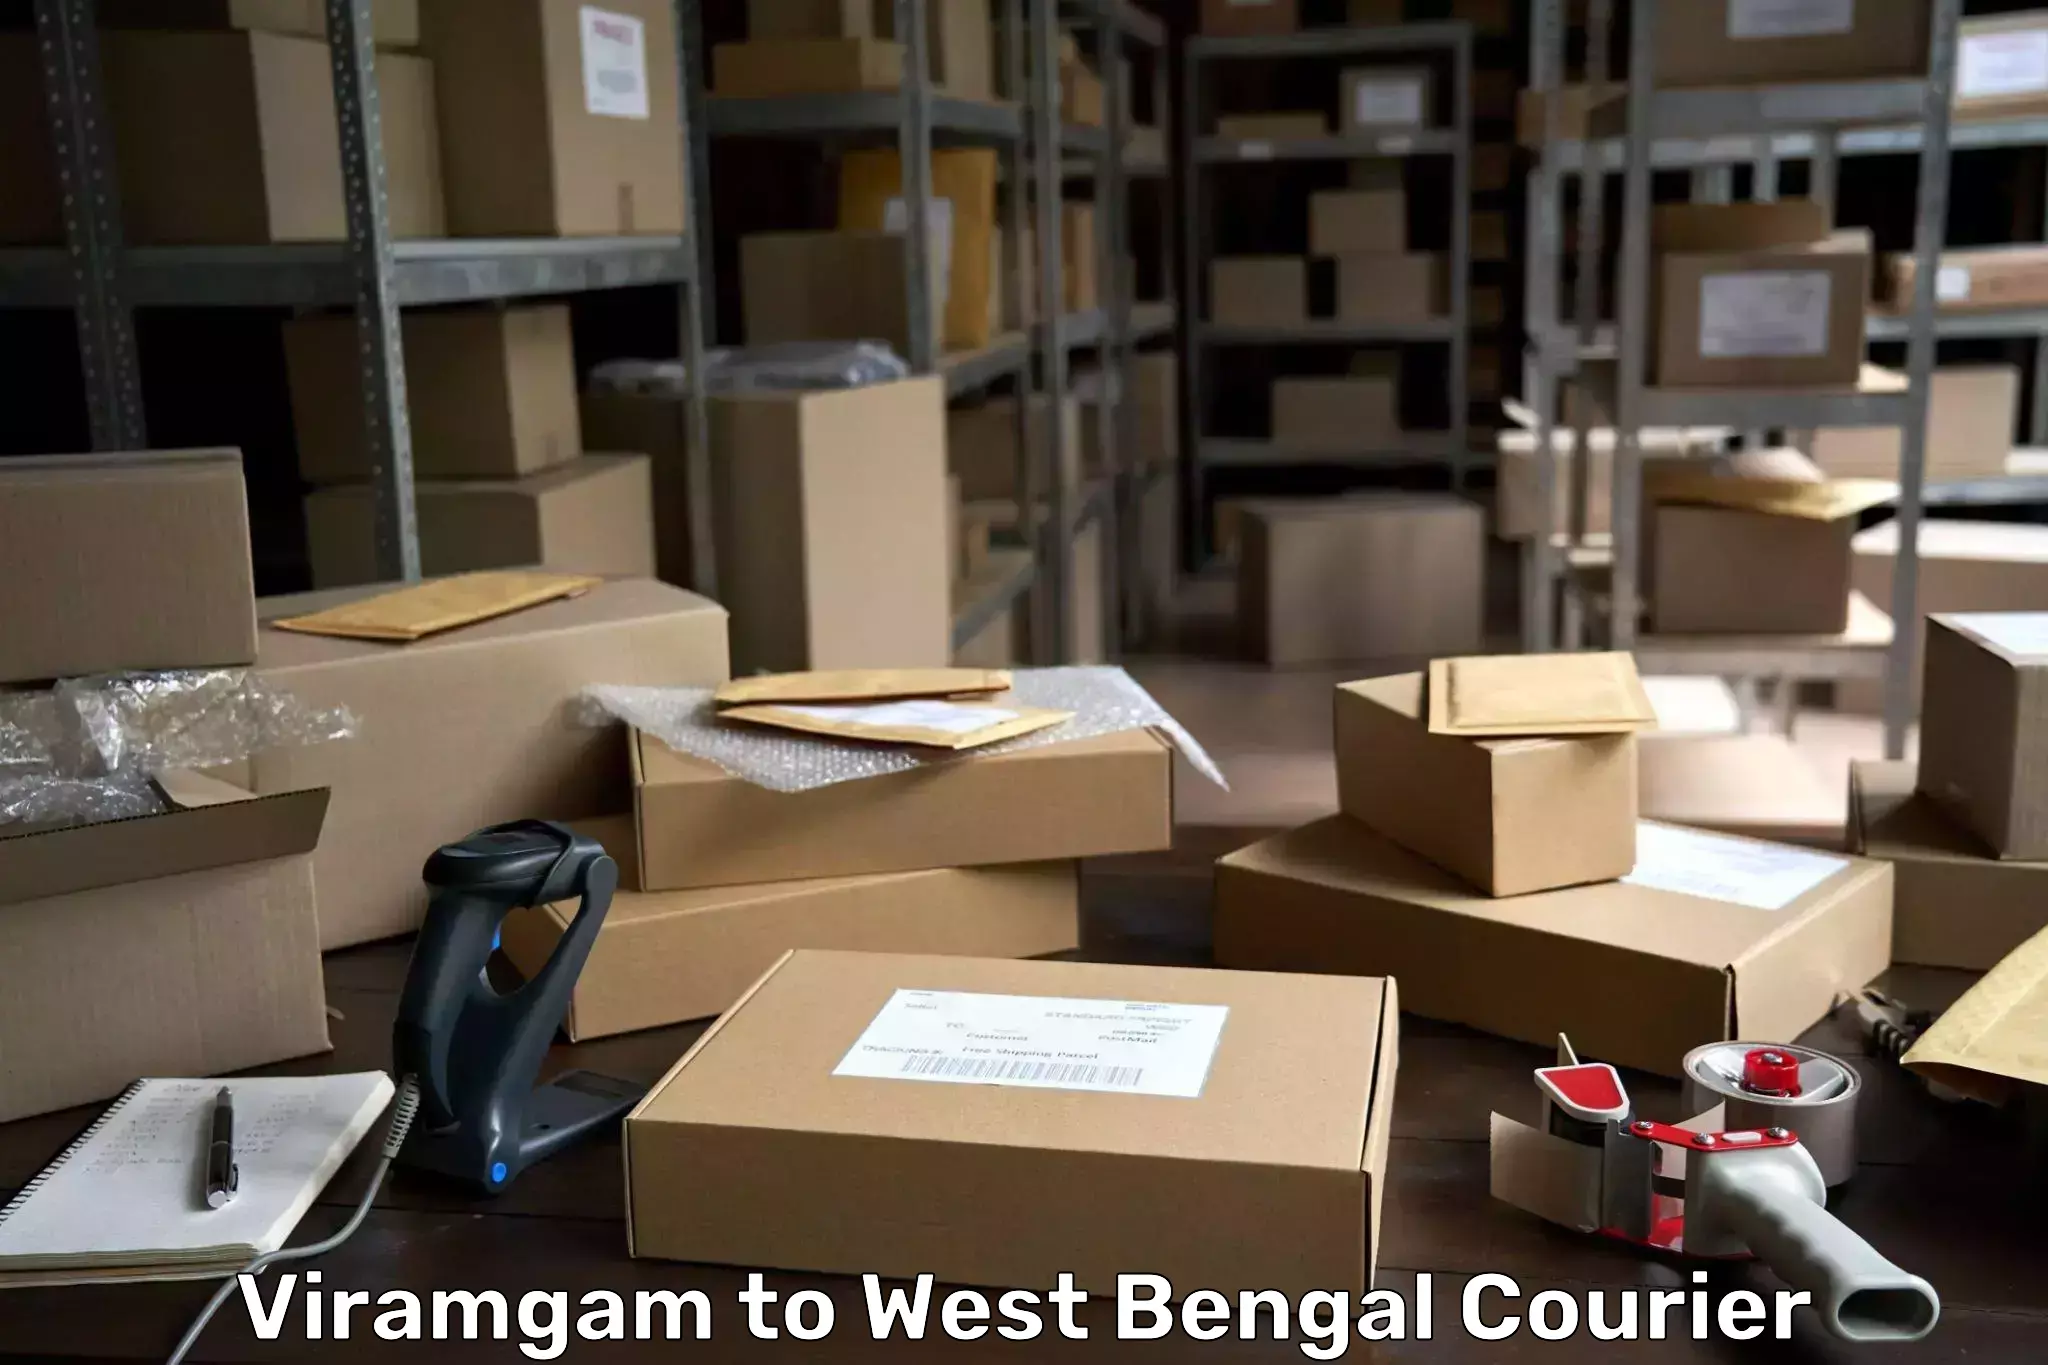 Customer-friendly courier services Viramgam to Kolkata Port